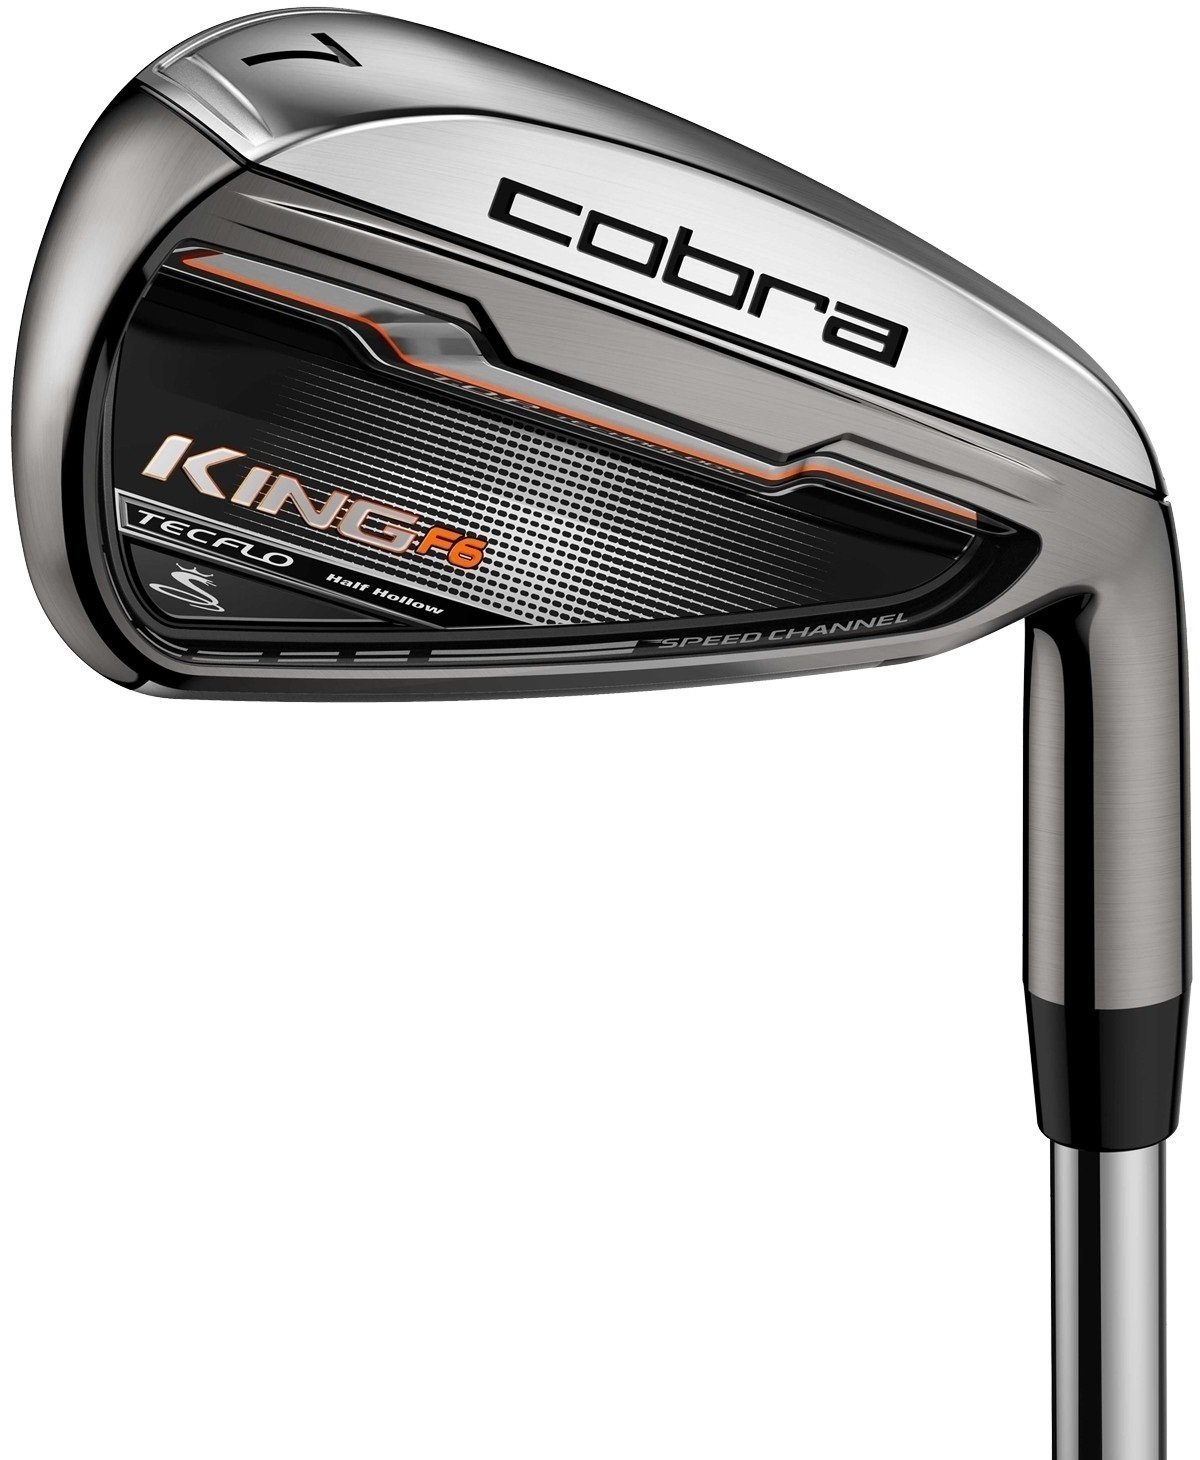 Club de golf - fers Cobra Golf King F6 fer a l'unité droitier homme Sets Regular 4-PW